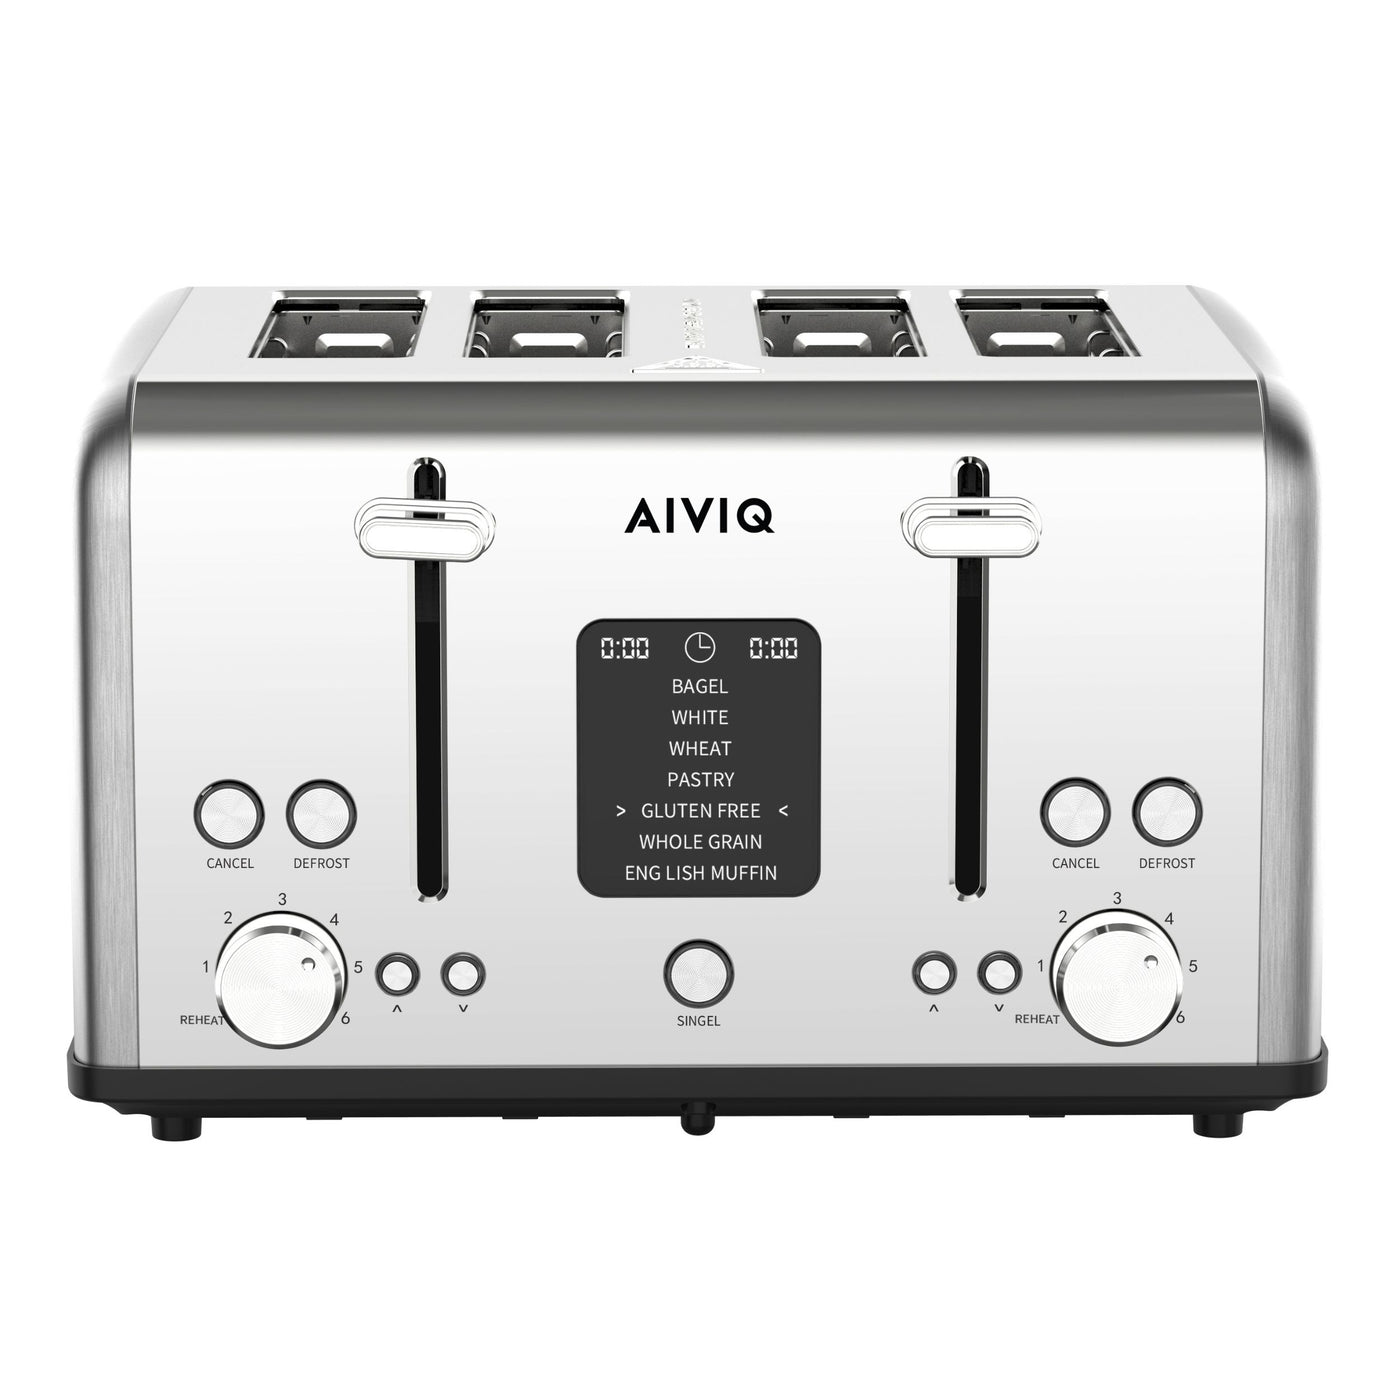 AIVIQ SmartToast Pro 4S Brødrister 4 Skiver - ABT-421